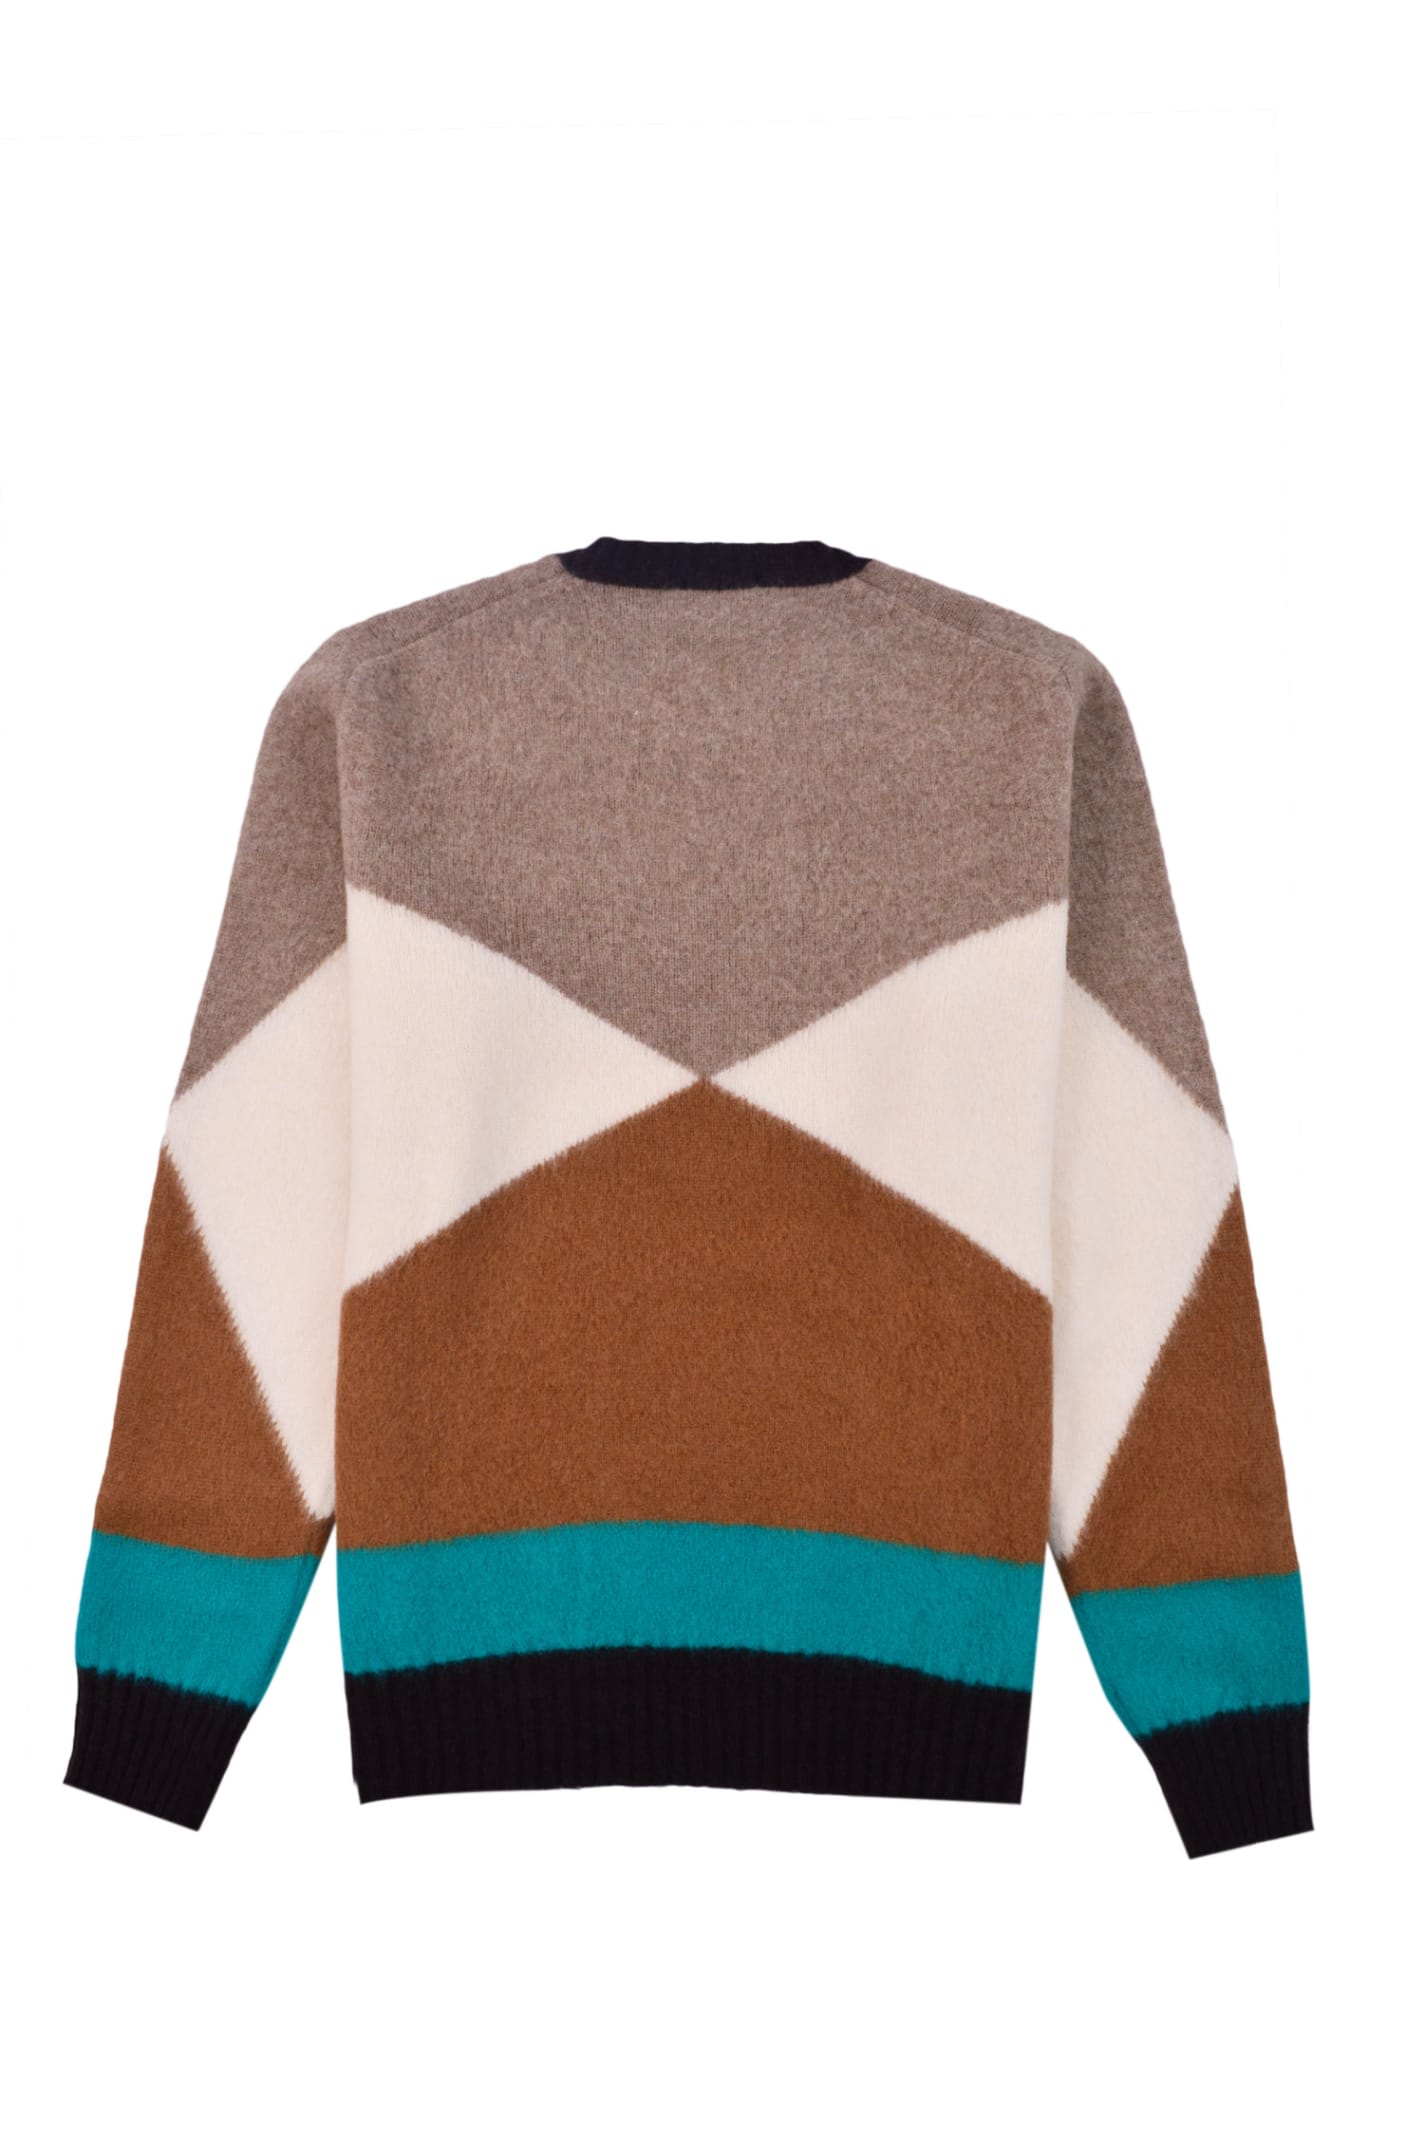 Shop Drumohr Sweater